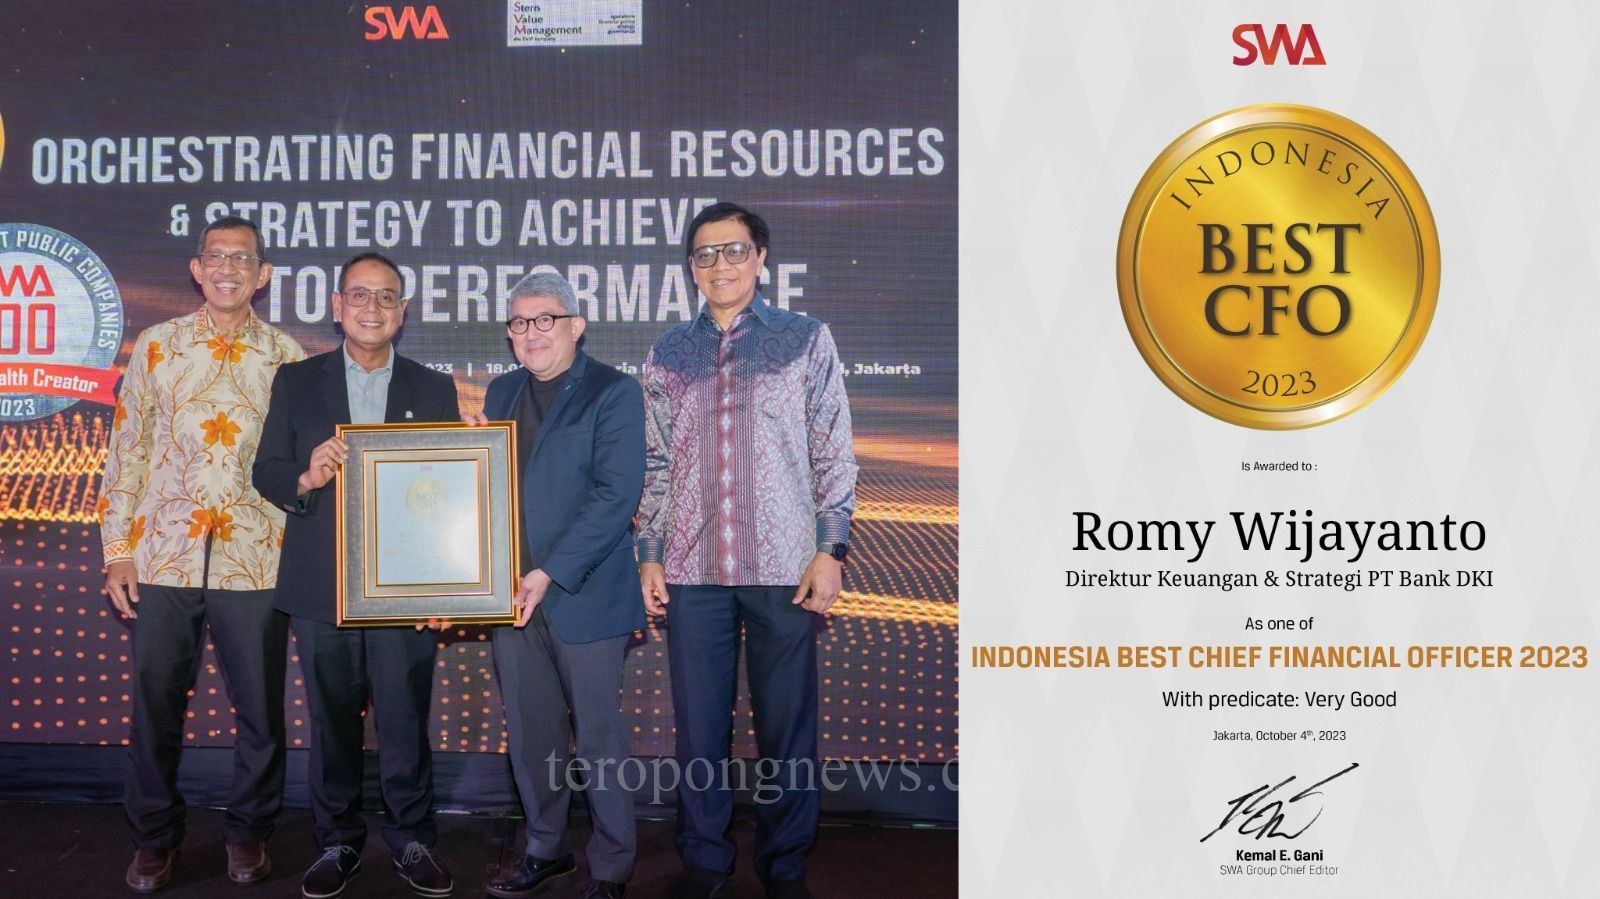 Romy Wijayanto (kedua dari kiri) menerima penghargaan dari Chief Editor SWA Media Group, Kemal E.Gani (kedua dari kanan), sebagai Indonesia Best CFO 2023, didampingi Dewan Juri Reinaldi Firmansyah (kiri) dan Prof. Ir. Roy Sembel (kanan), pada acara SWA Indonesia Best CFO 2023 dengan tema Orchestrating Financial Resources dan Strategy to Achieve Top Performance, di Jakarta pada Rabu (04/10/2023). (Foto : Dok. Bank DKI)